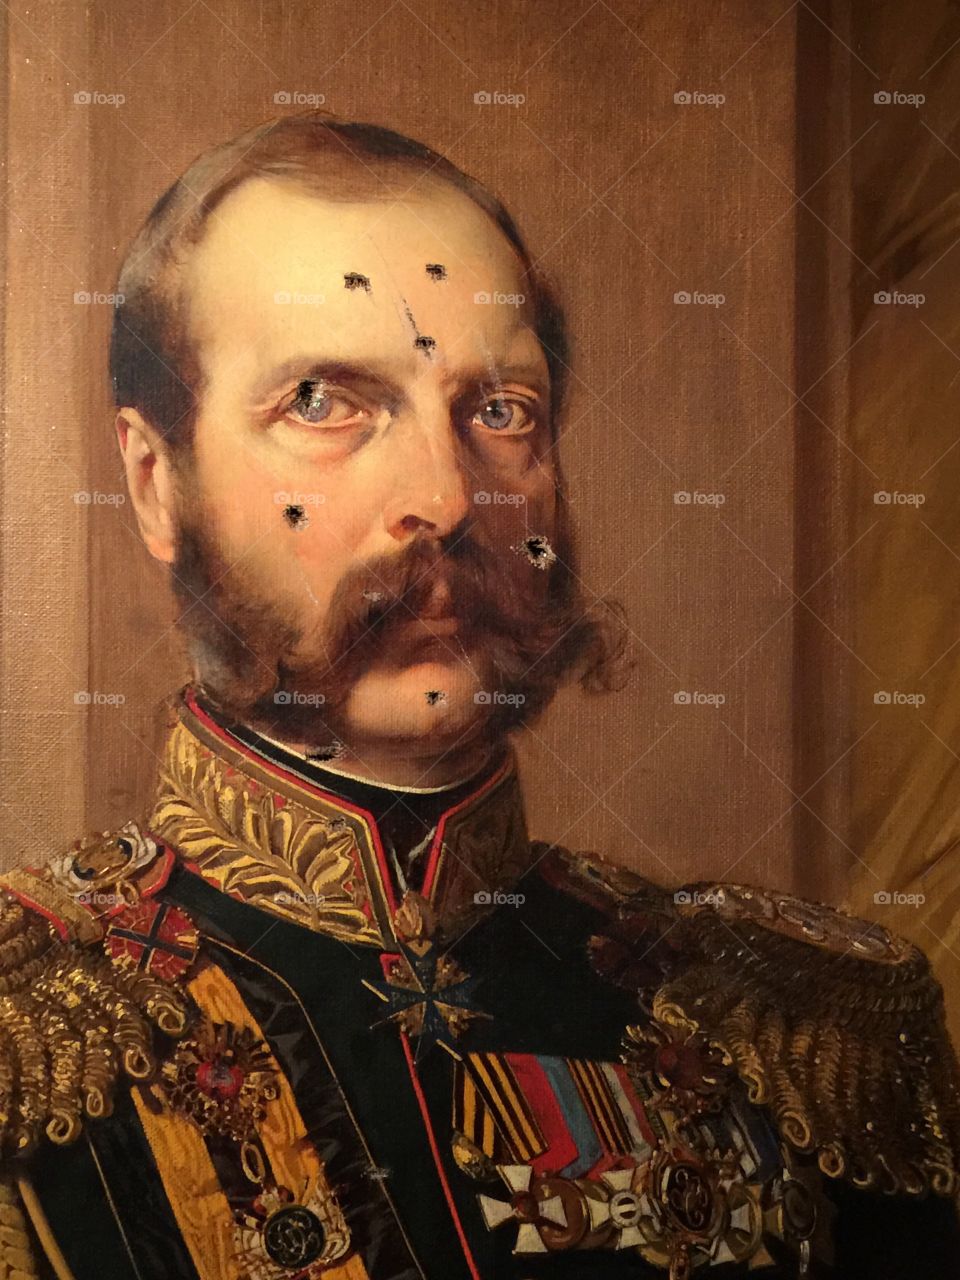 Murder of Tsar Nicholas II 